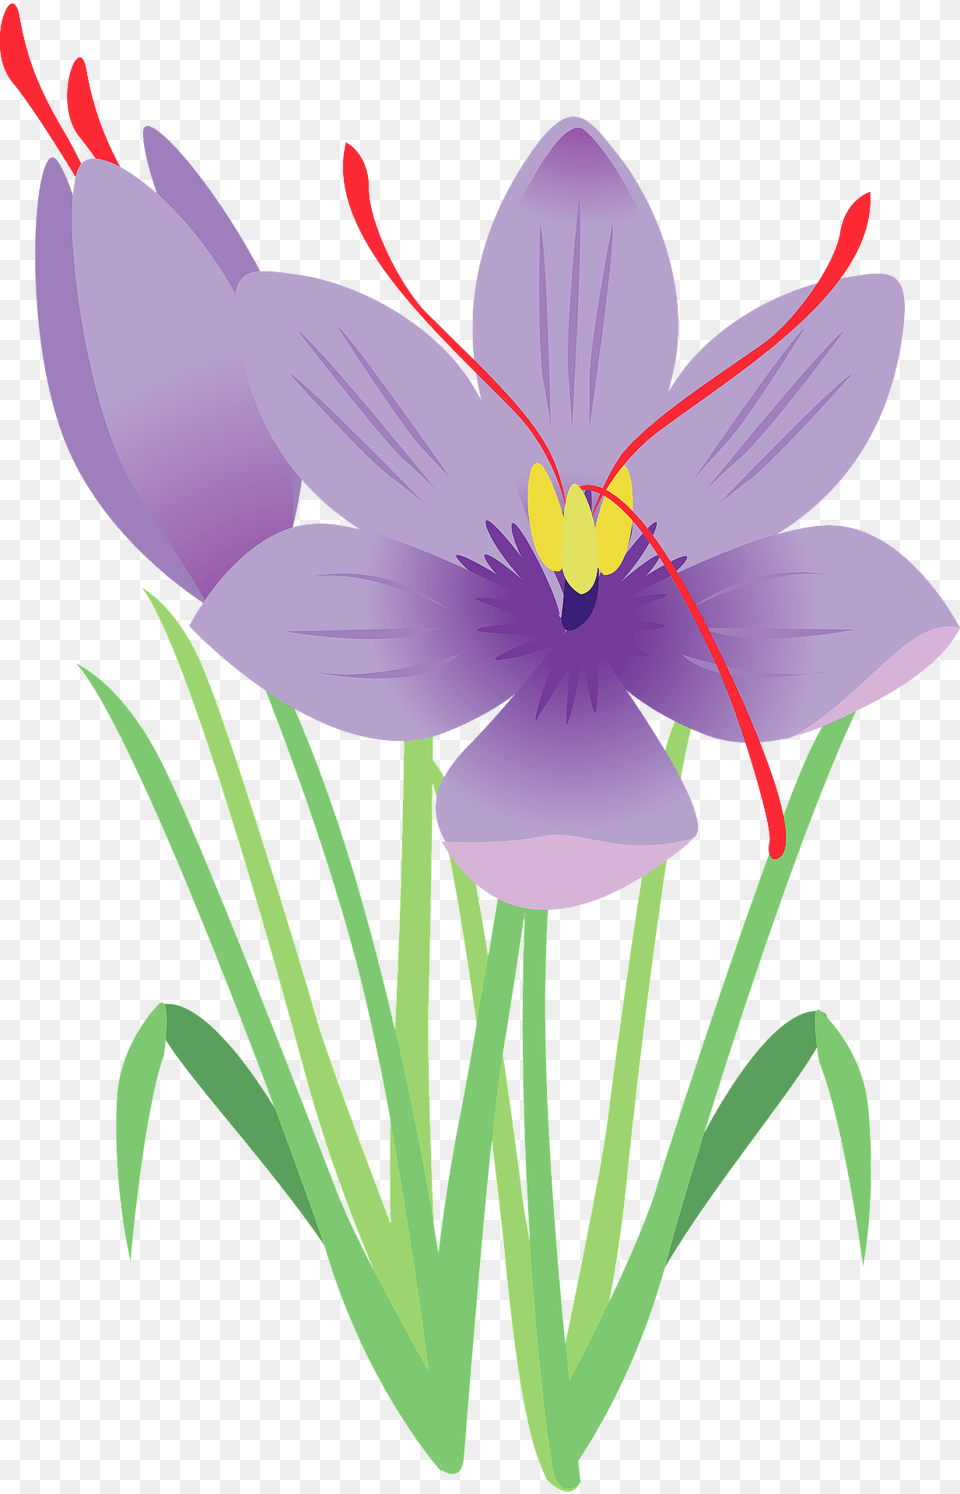 Saffron Flower Clipart, Anther, Plant, Crocus, Petal Free Transparent Png